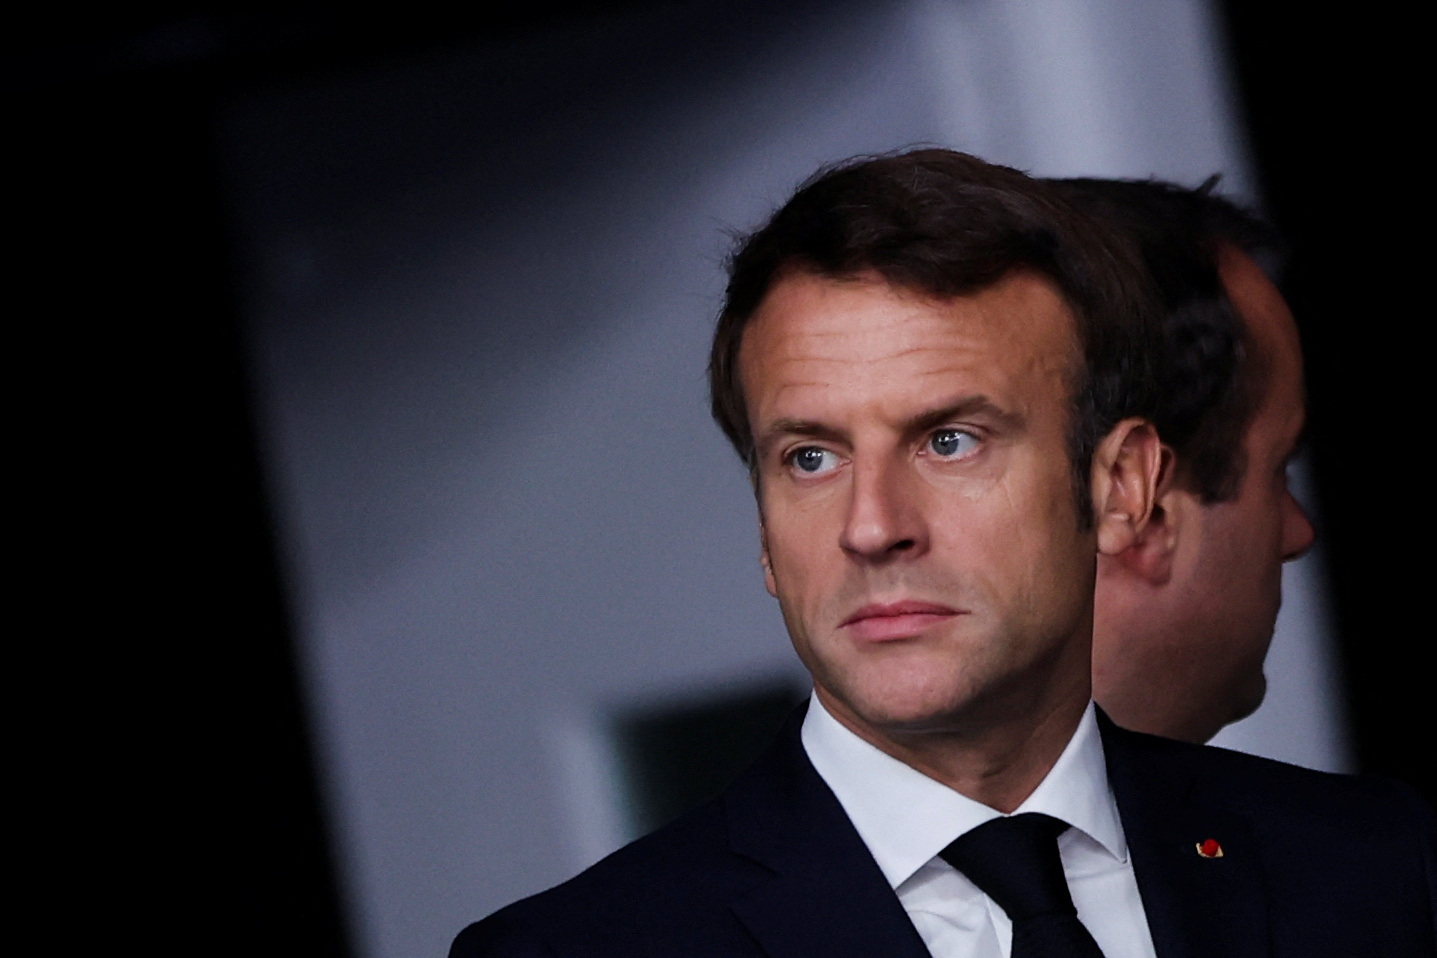 El presidente francés Emmanuel Macron reorganiza su gobierno luego de la derrota legislativa